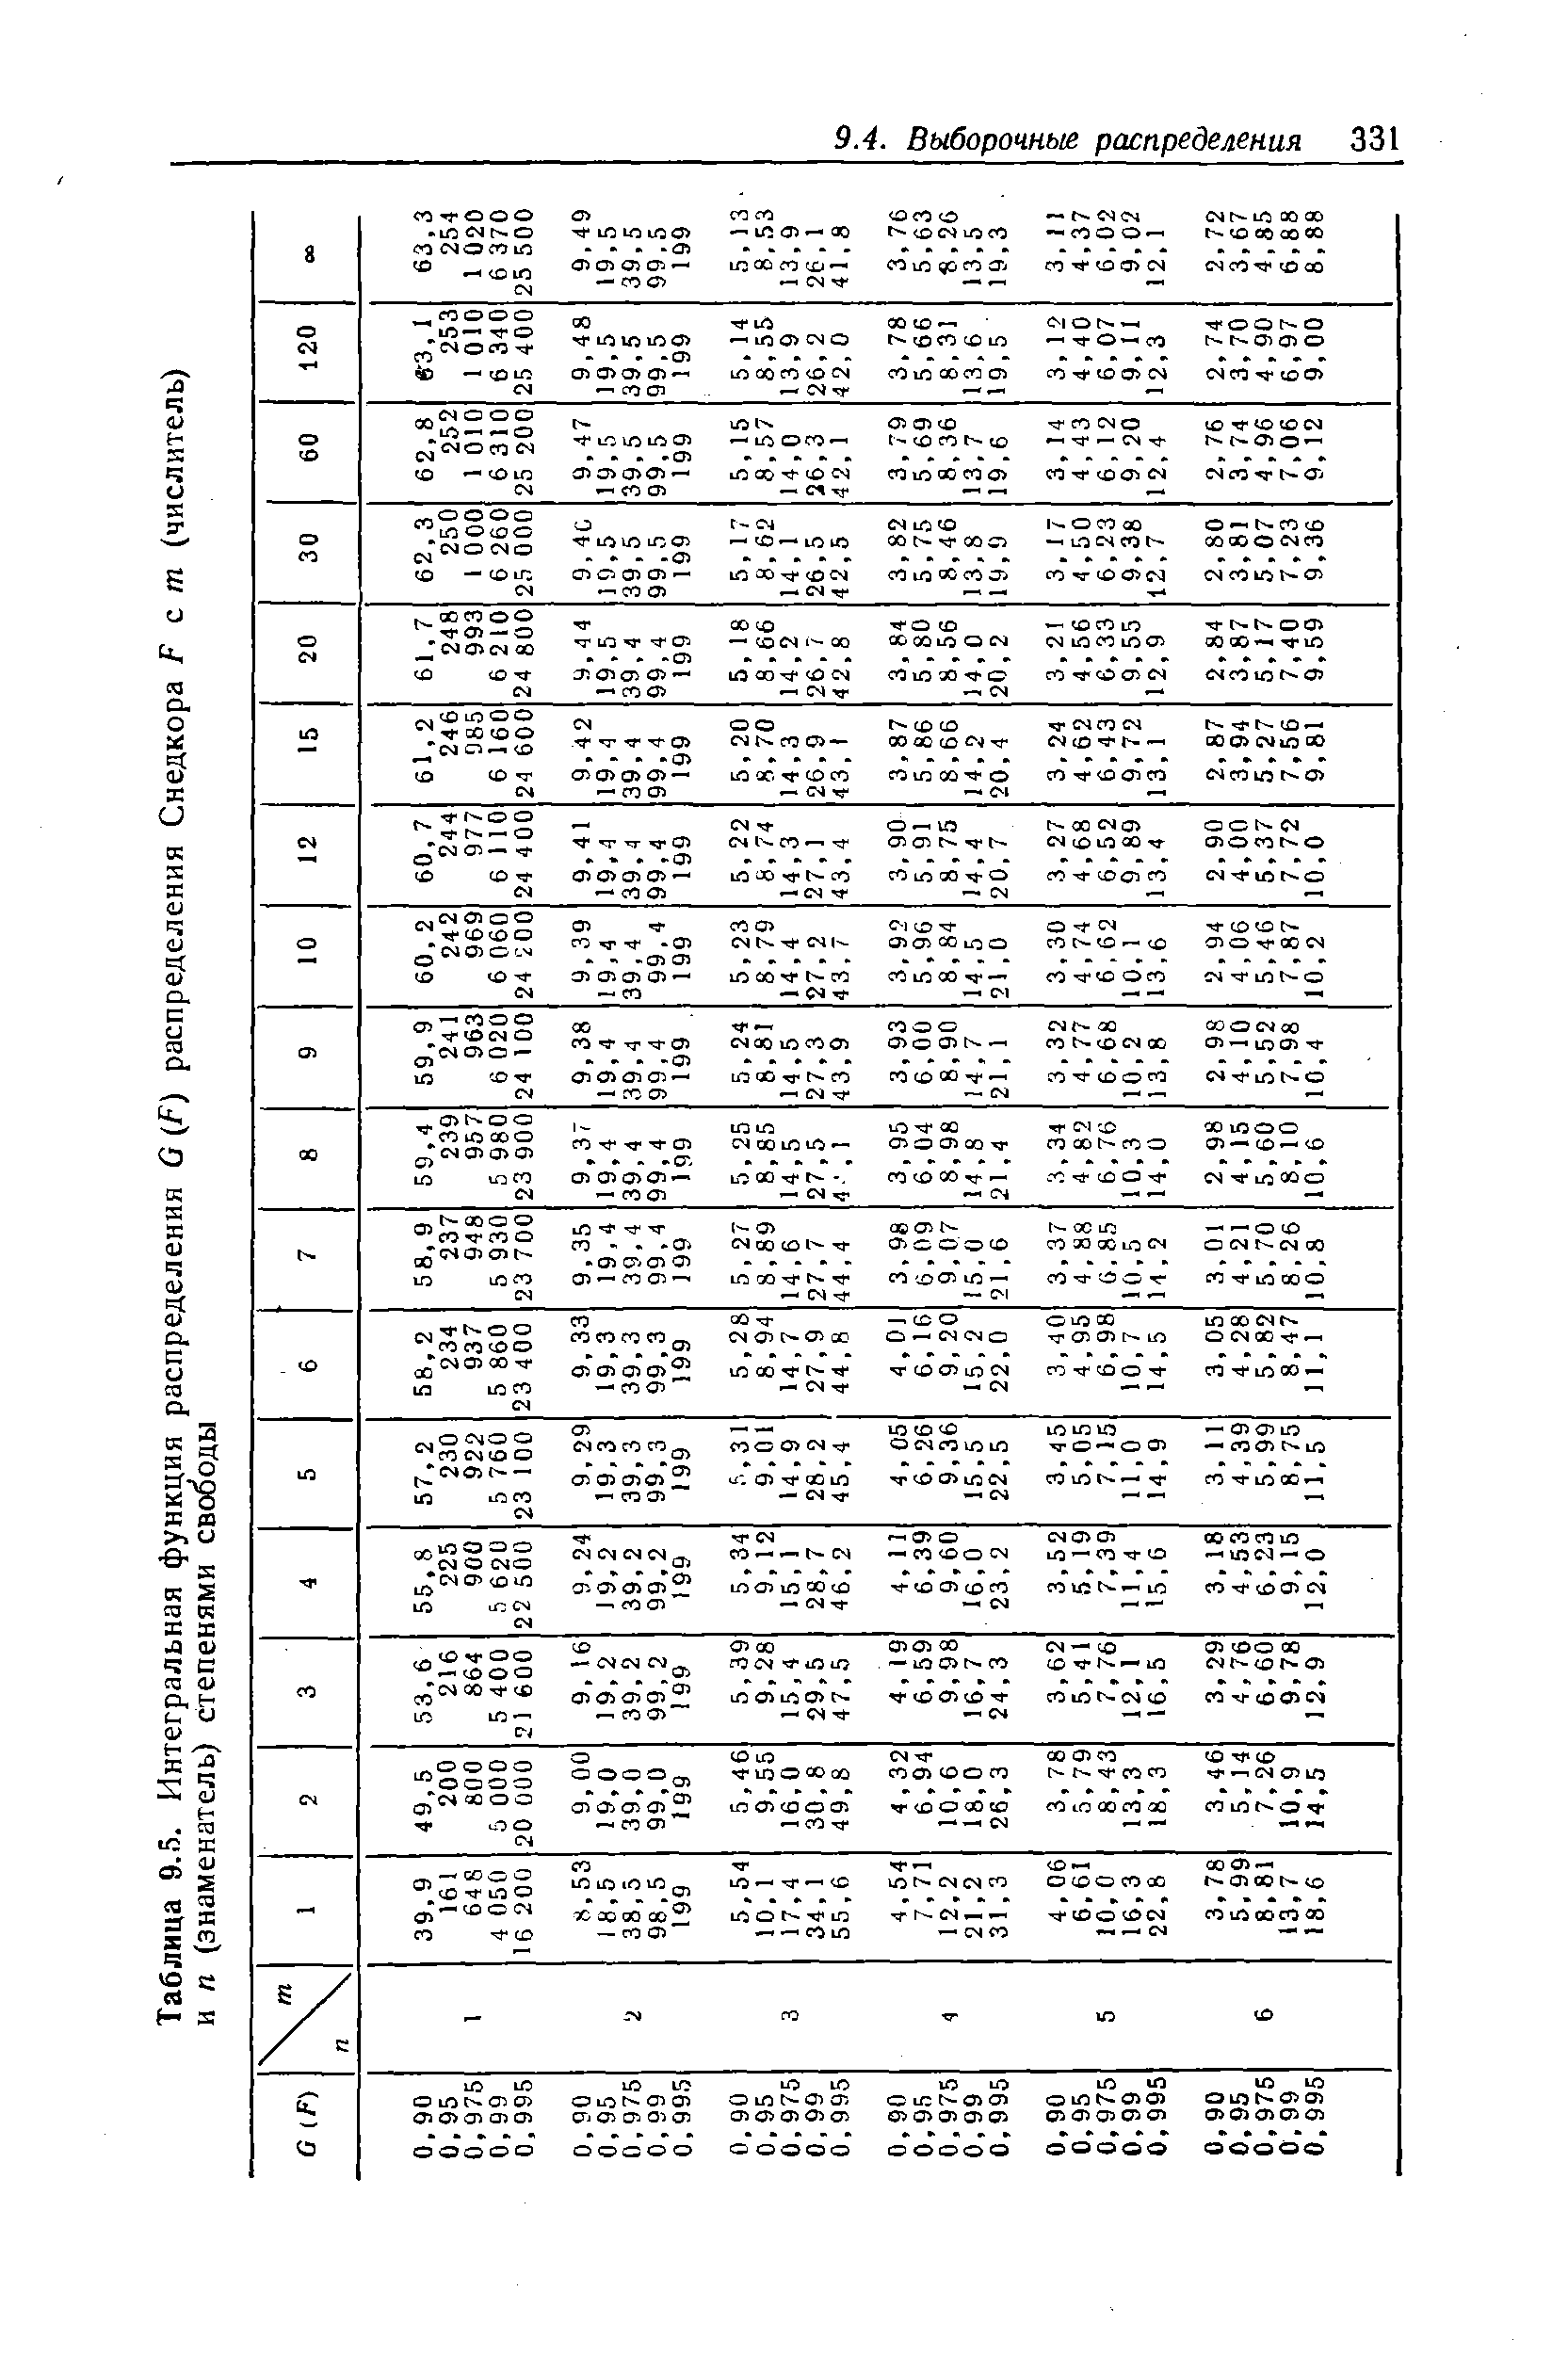 Таблица 9.5. Интегральная функция распределения G (F) распределения Снедкора F с т (числитель)
